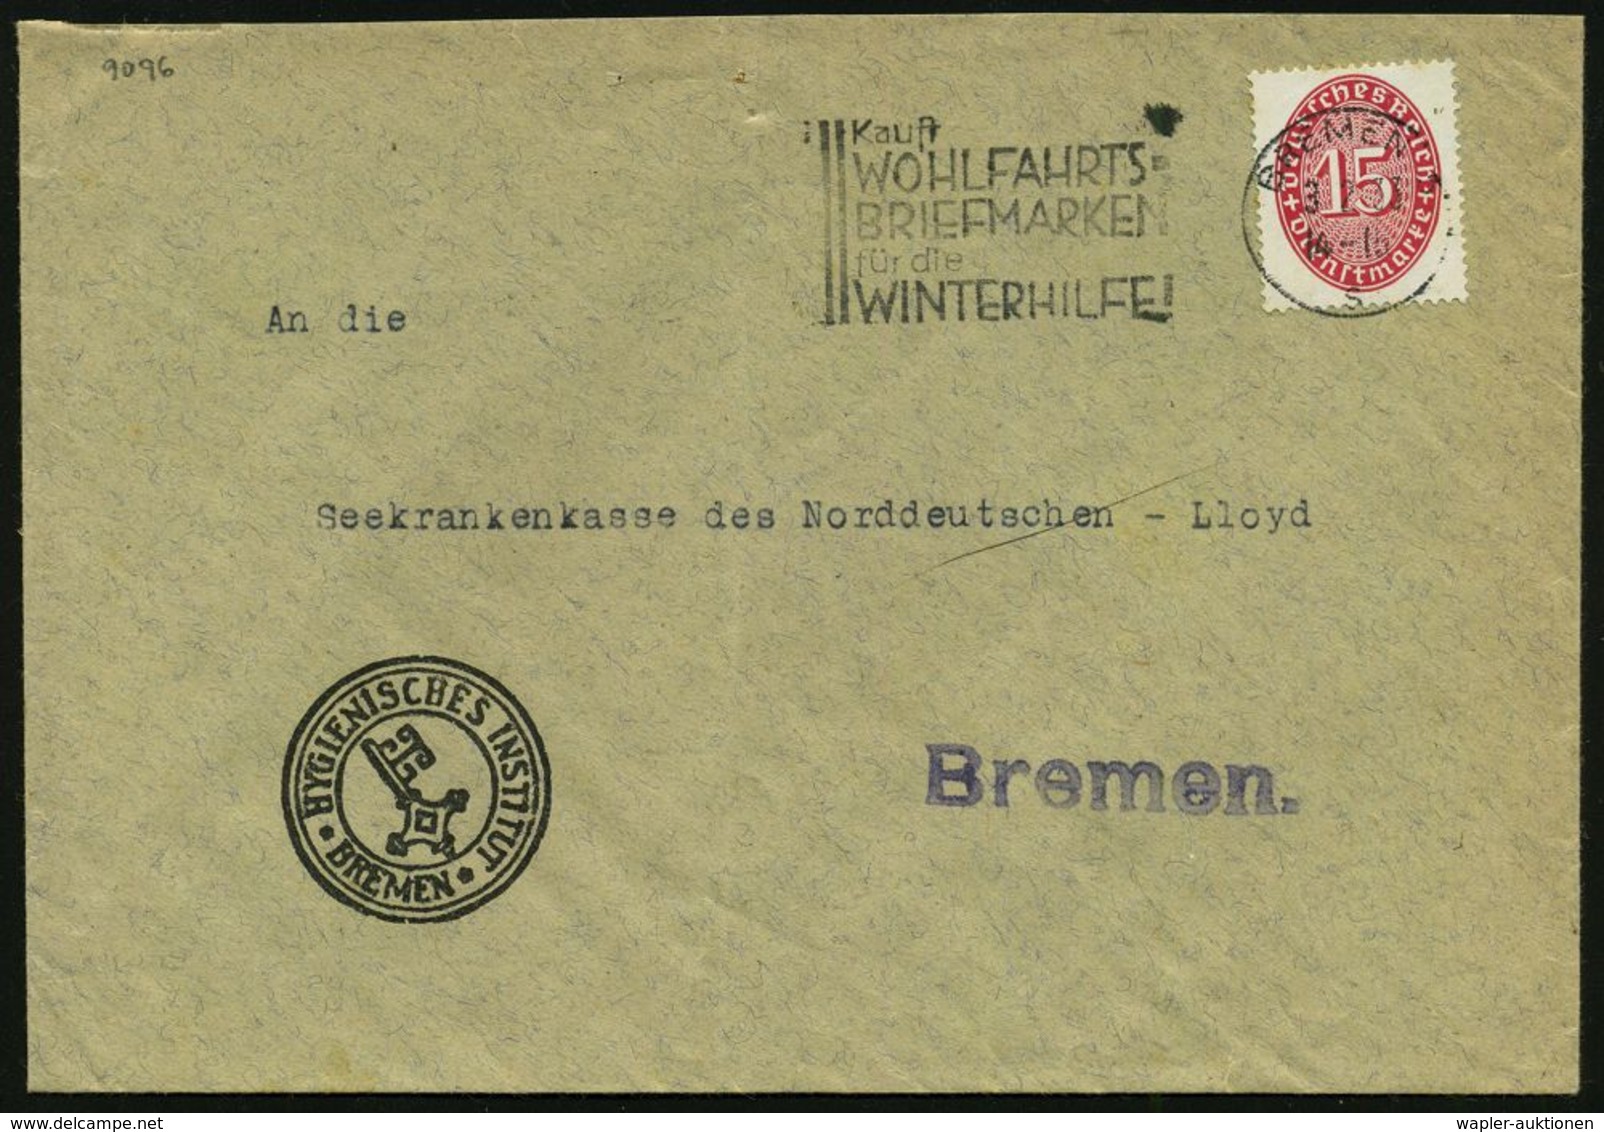 MEDIZINISCHE INSTITUTIONEN & INSTITUTE : BREMEN 5/ S/ Kauft/ WOHLFAHRTS=/ BRIEFMARKEN/ Für D./ WINTERHILFE! 1933 (3.2.)  - Médecine